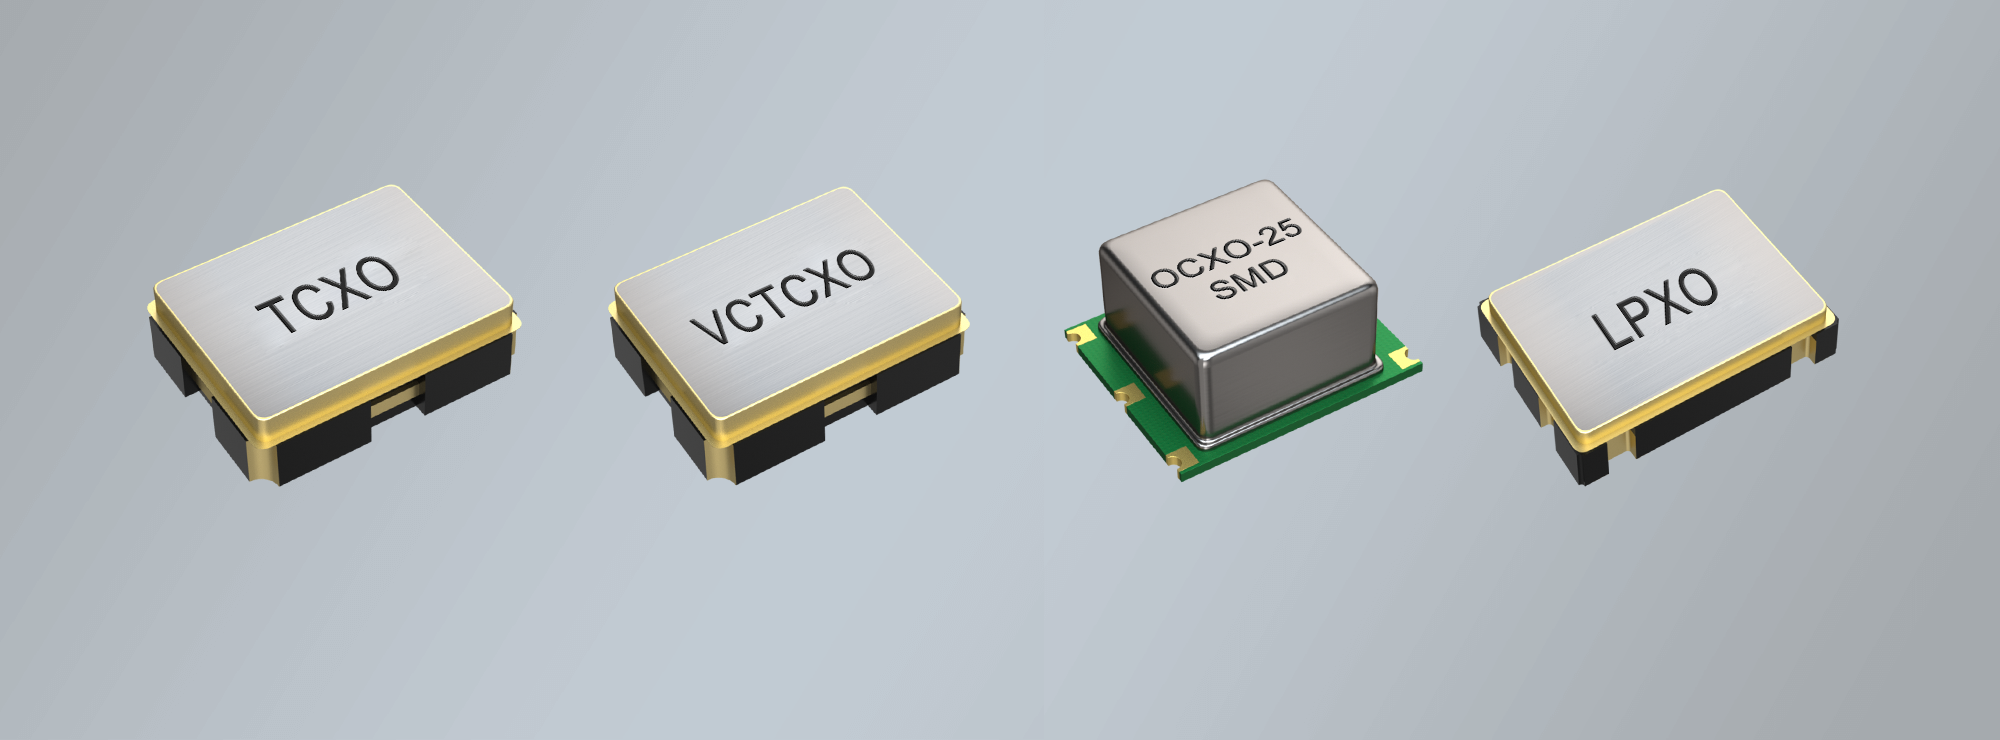 Referenzdesign von SMD Quarz-Oszillatoren für IC Hersteller